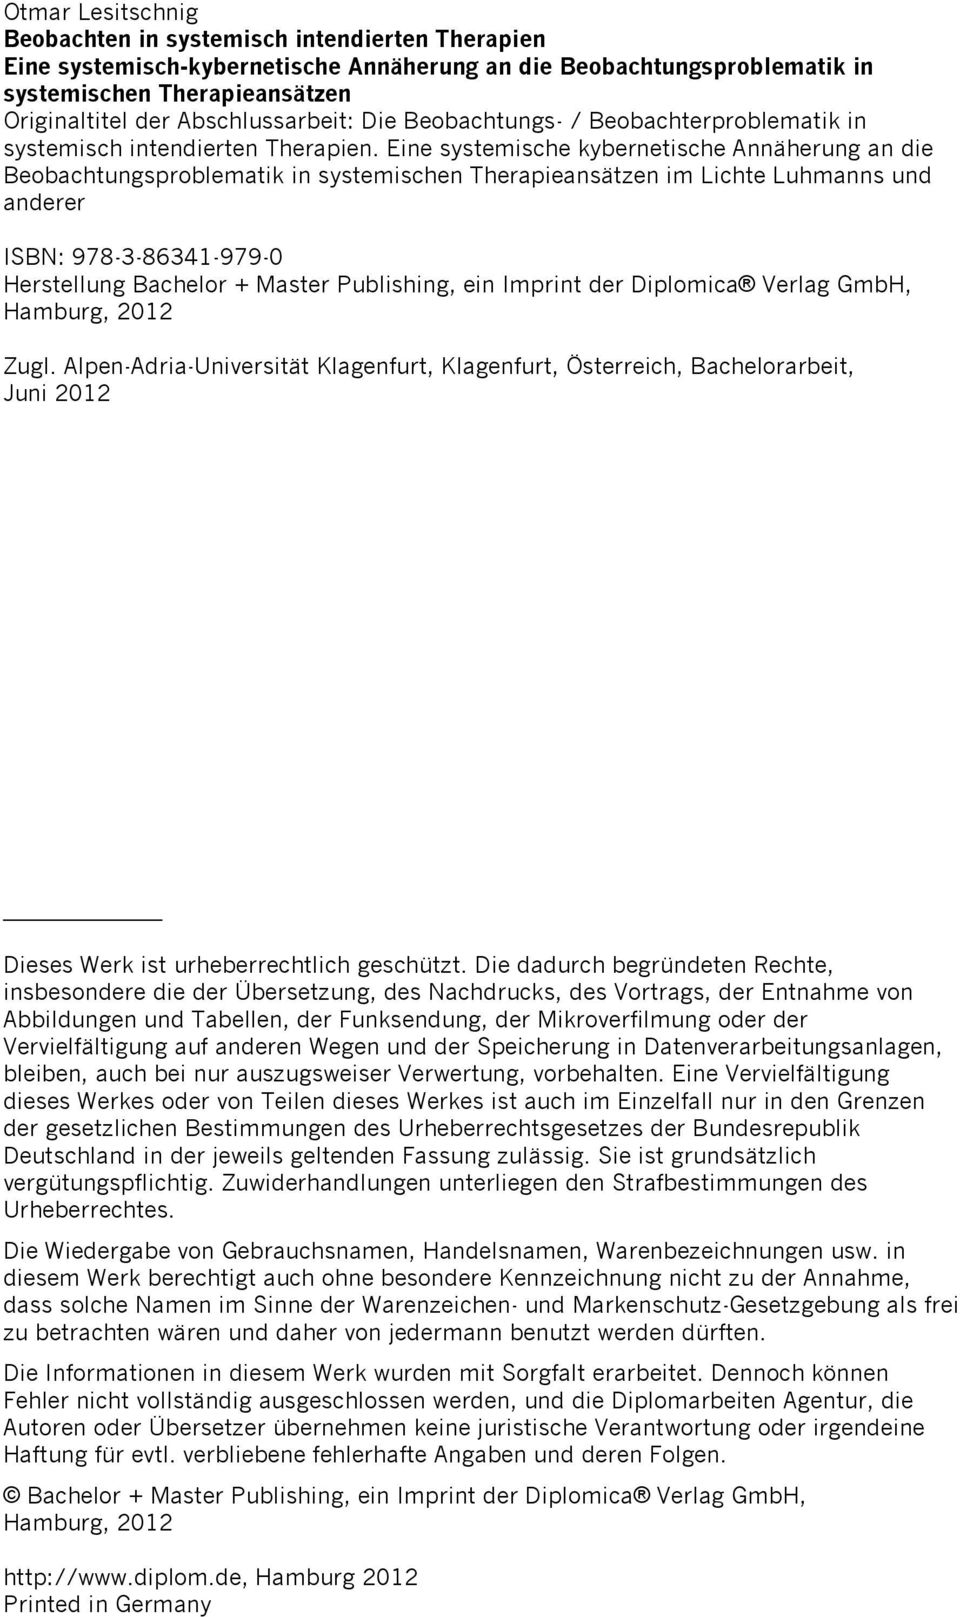 Eine systemische kybernetische Annäherung an die Beobachtungsproblematik in systemischen Therapieansätzen im Lichte Luhmanns und anderer ISBN: 978-3-86341-979-0 Herstellung Bachelor + Master